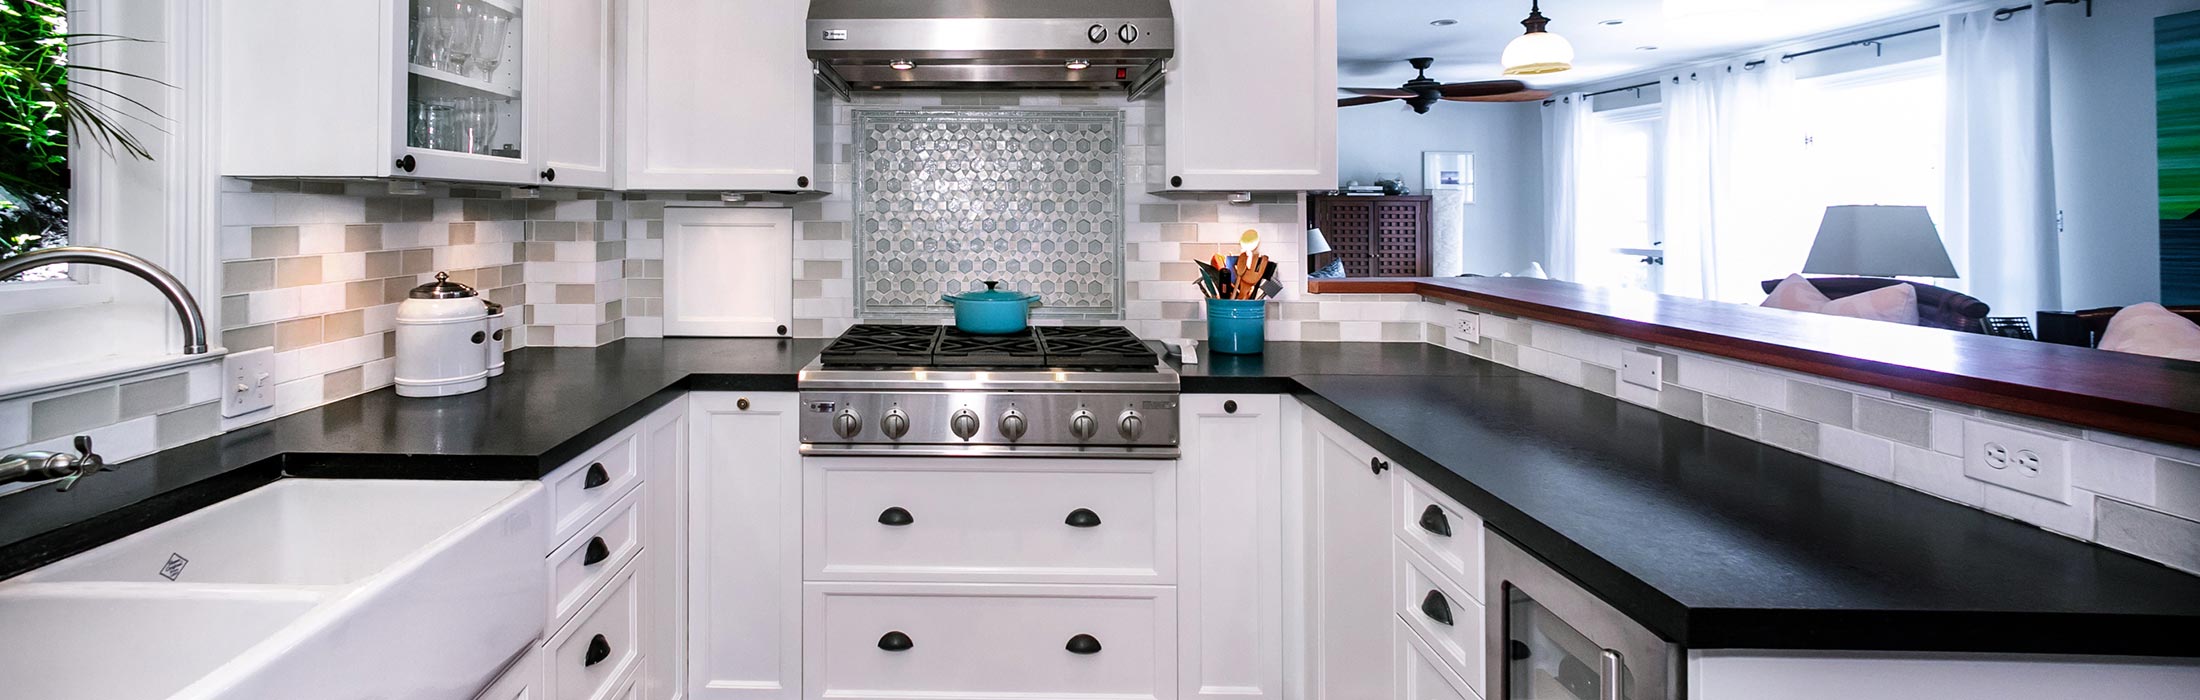 image of luxury remodeled kitchen